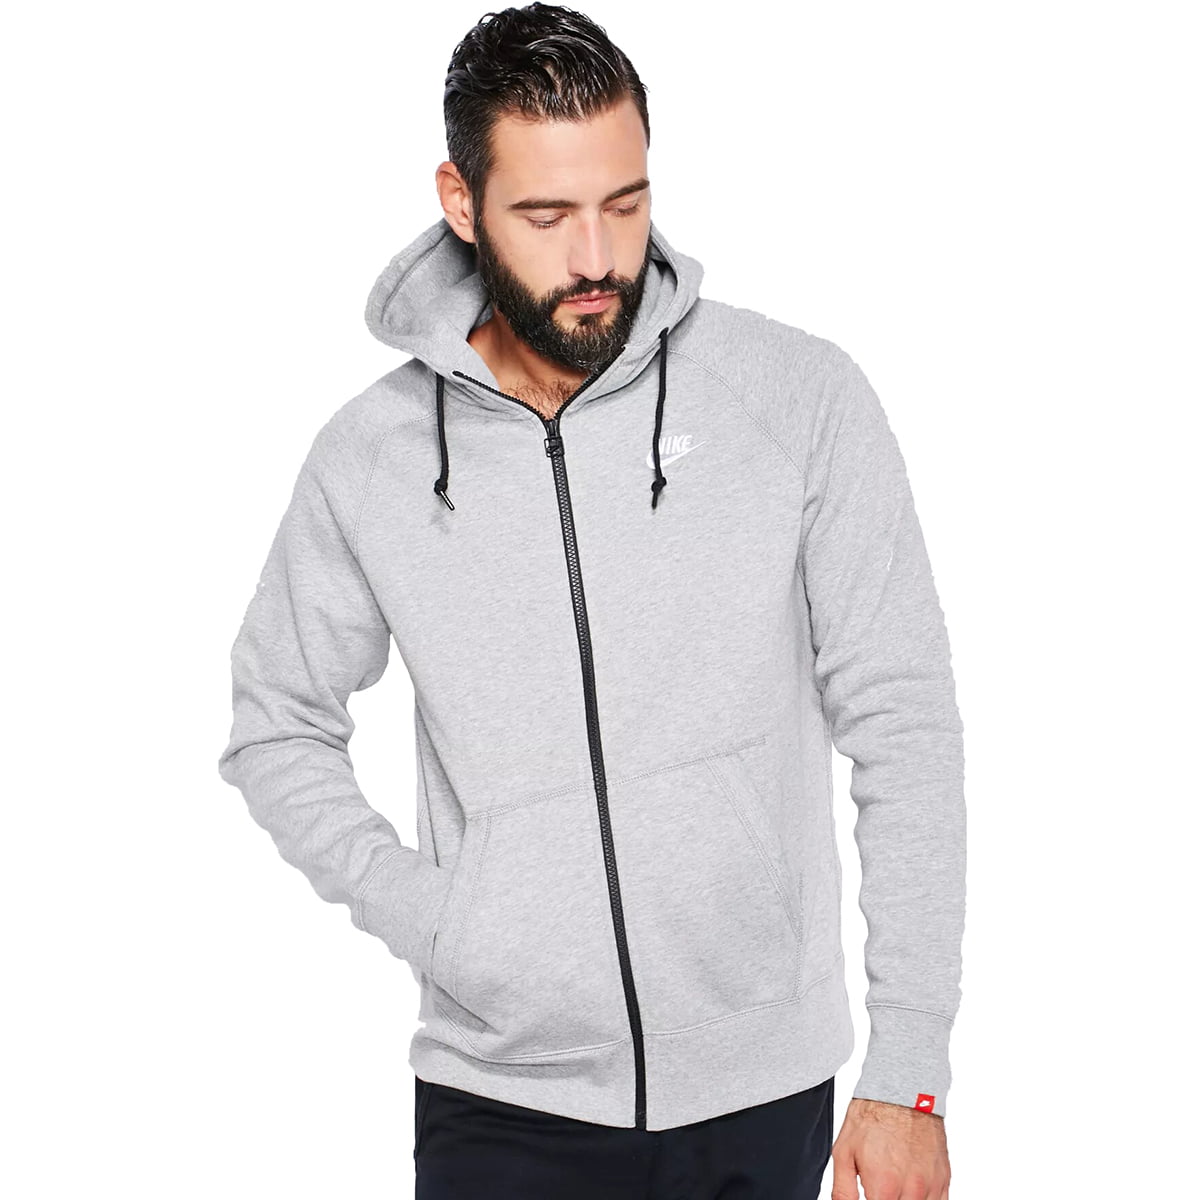 Nike AW77 Fleece FZ Hooded Sweatshirt Grey/White Walmart.com